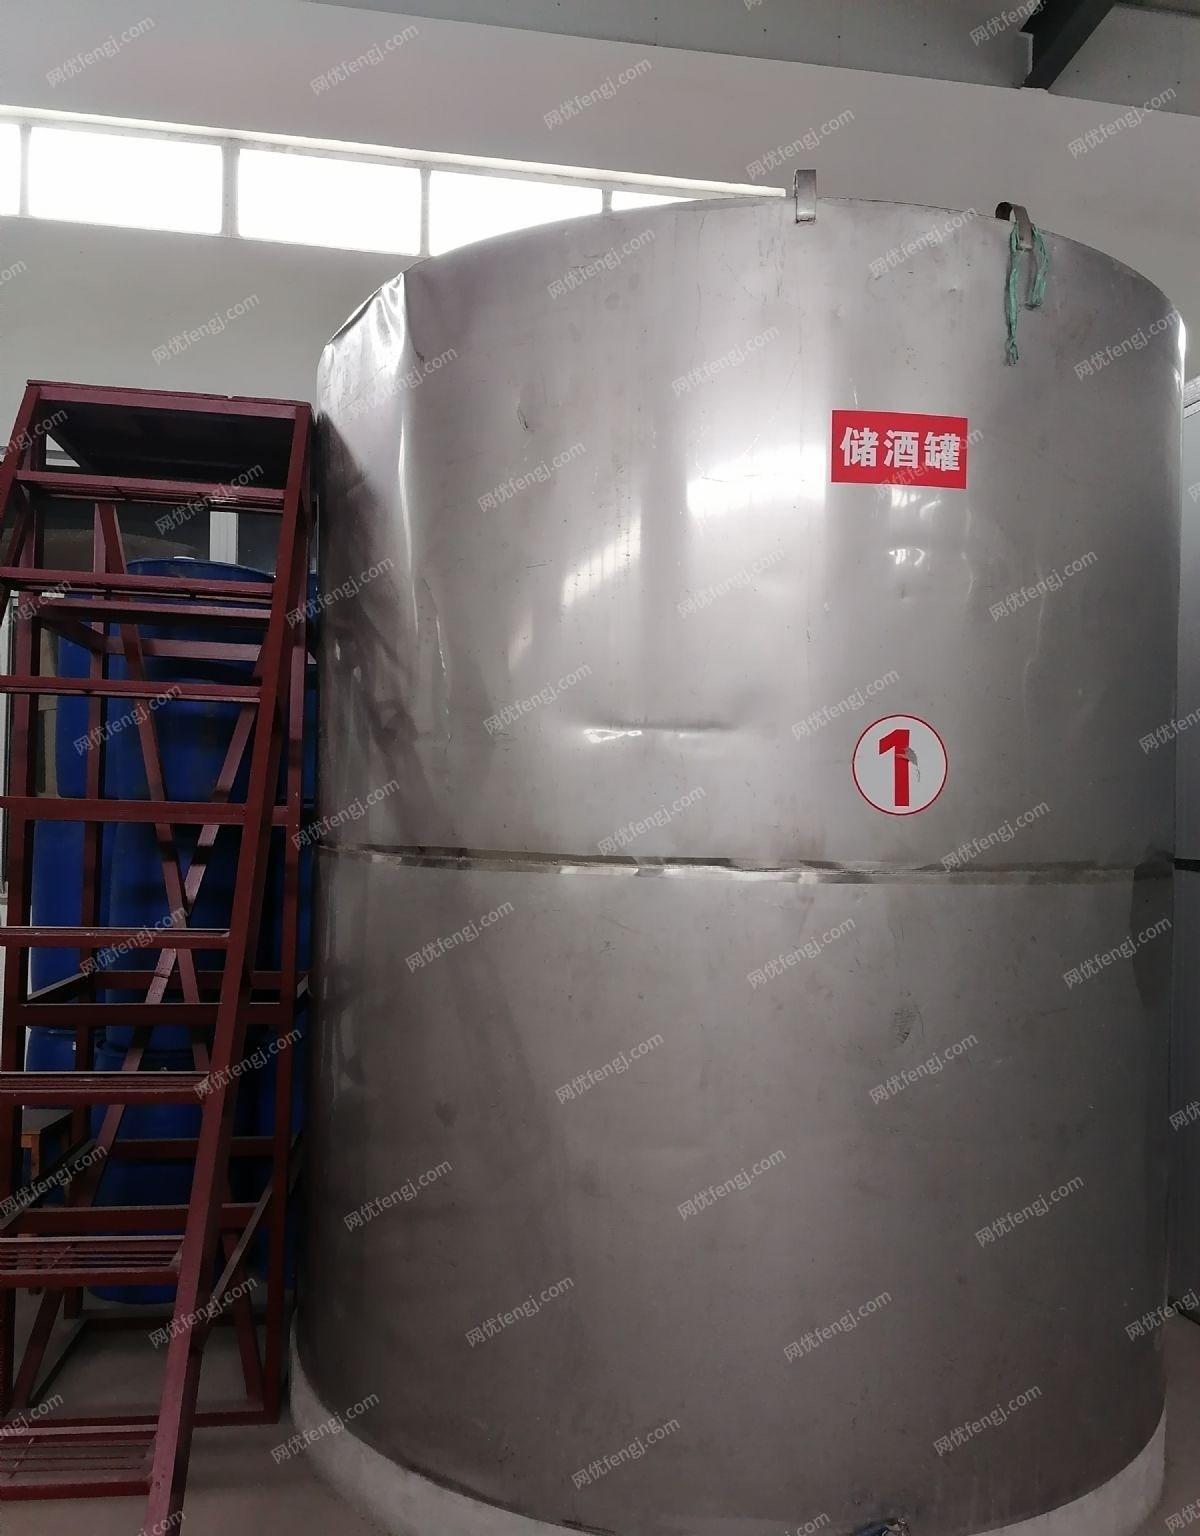 安徽安庆酒厂设备转让，30吨储酒罐8个，2吨高位罐2个，20吨储酒罐1个，水处理机和纯水罐